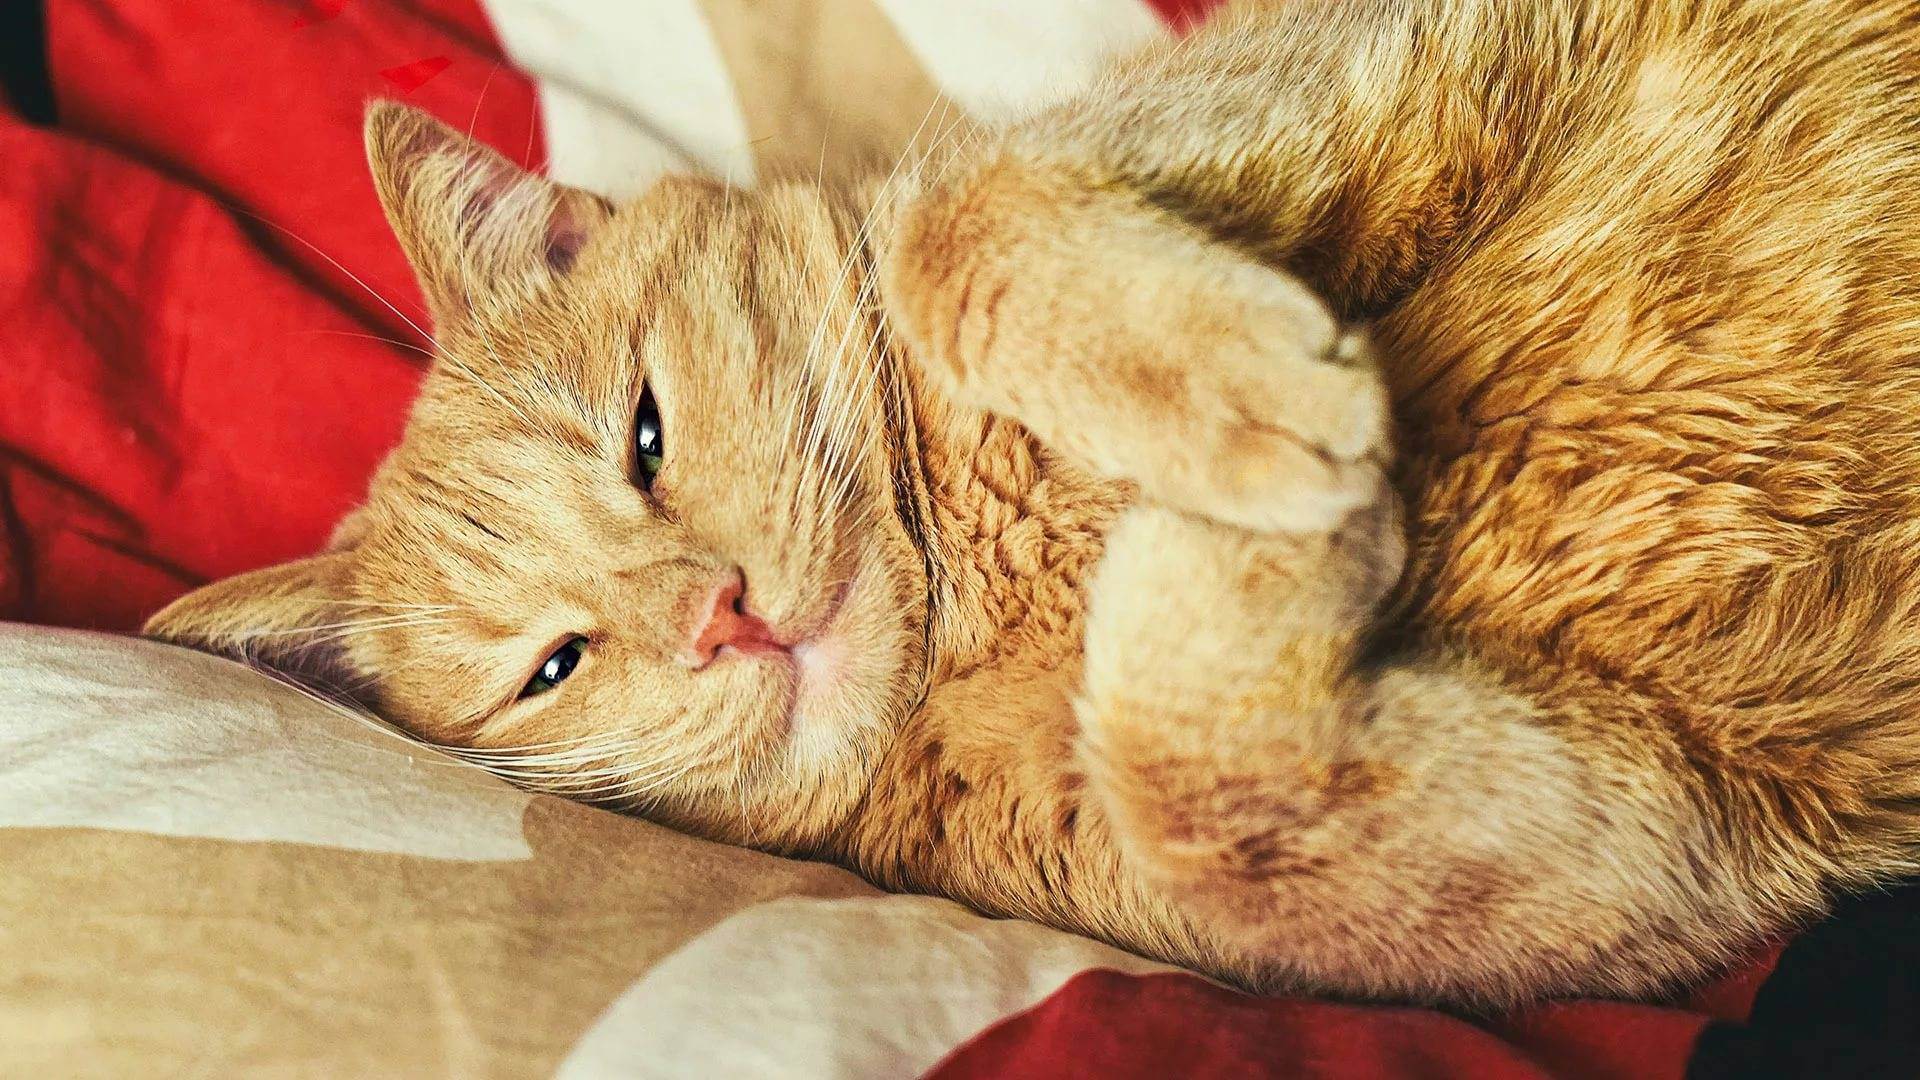 Сухой нос у кошки во время сна. почему у кота сухой нос? когда теплый, сухой нос считается вариантом нормы